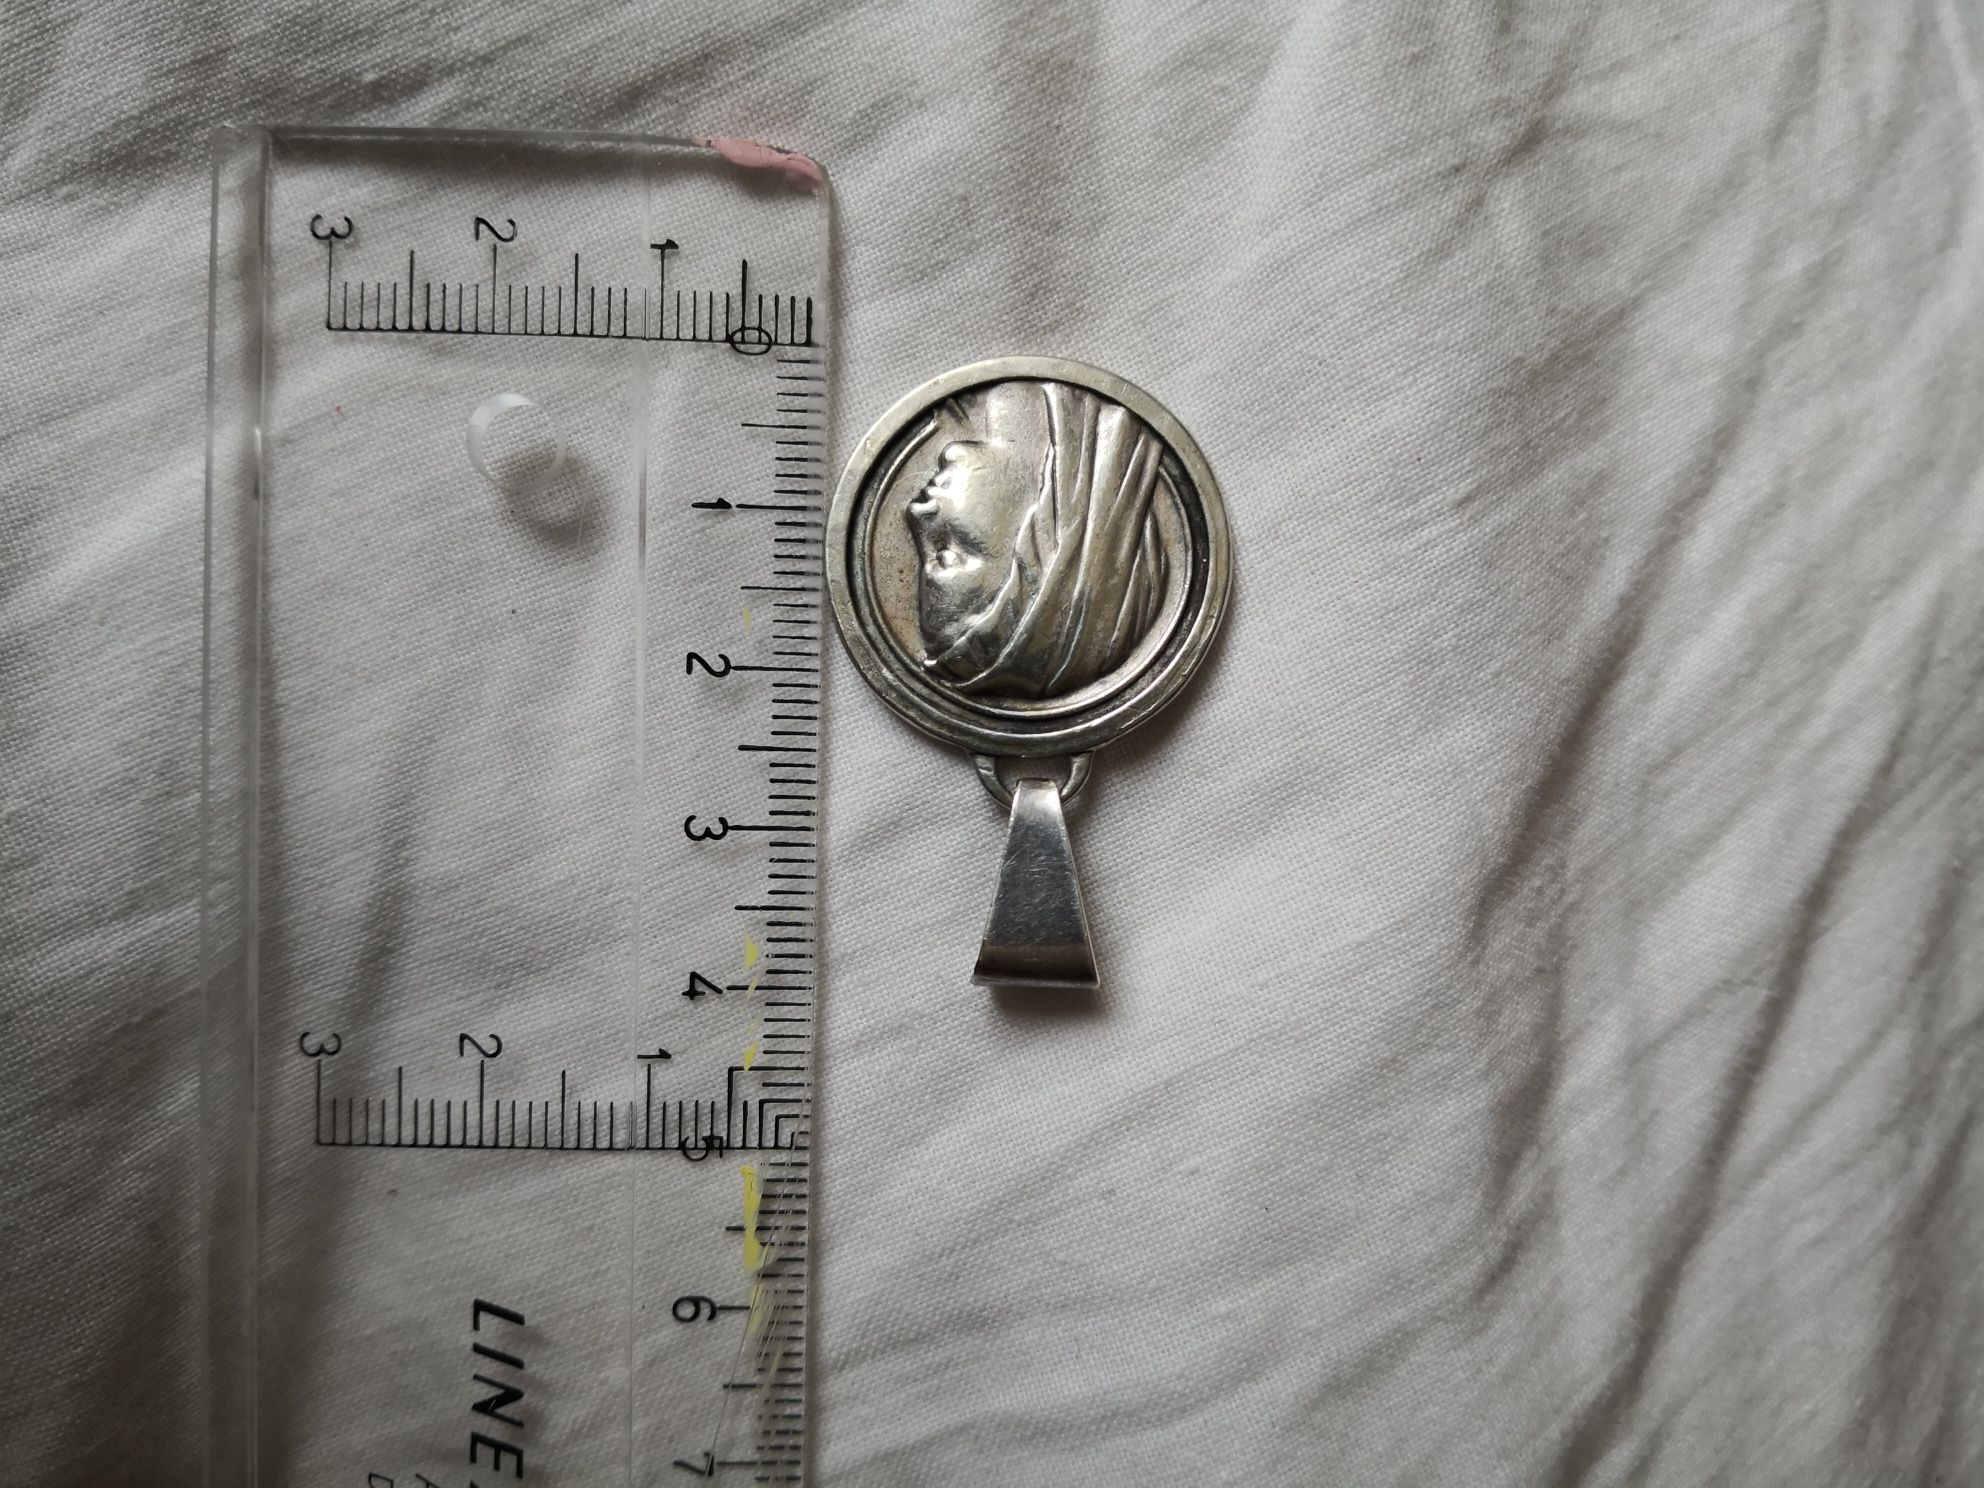 Duża srebrna stara zawieszka wisior medalik matka boska srebro biżuter